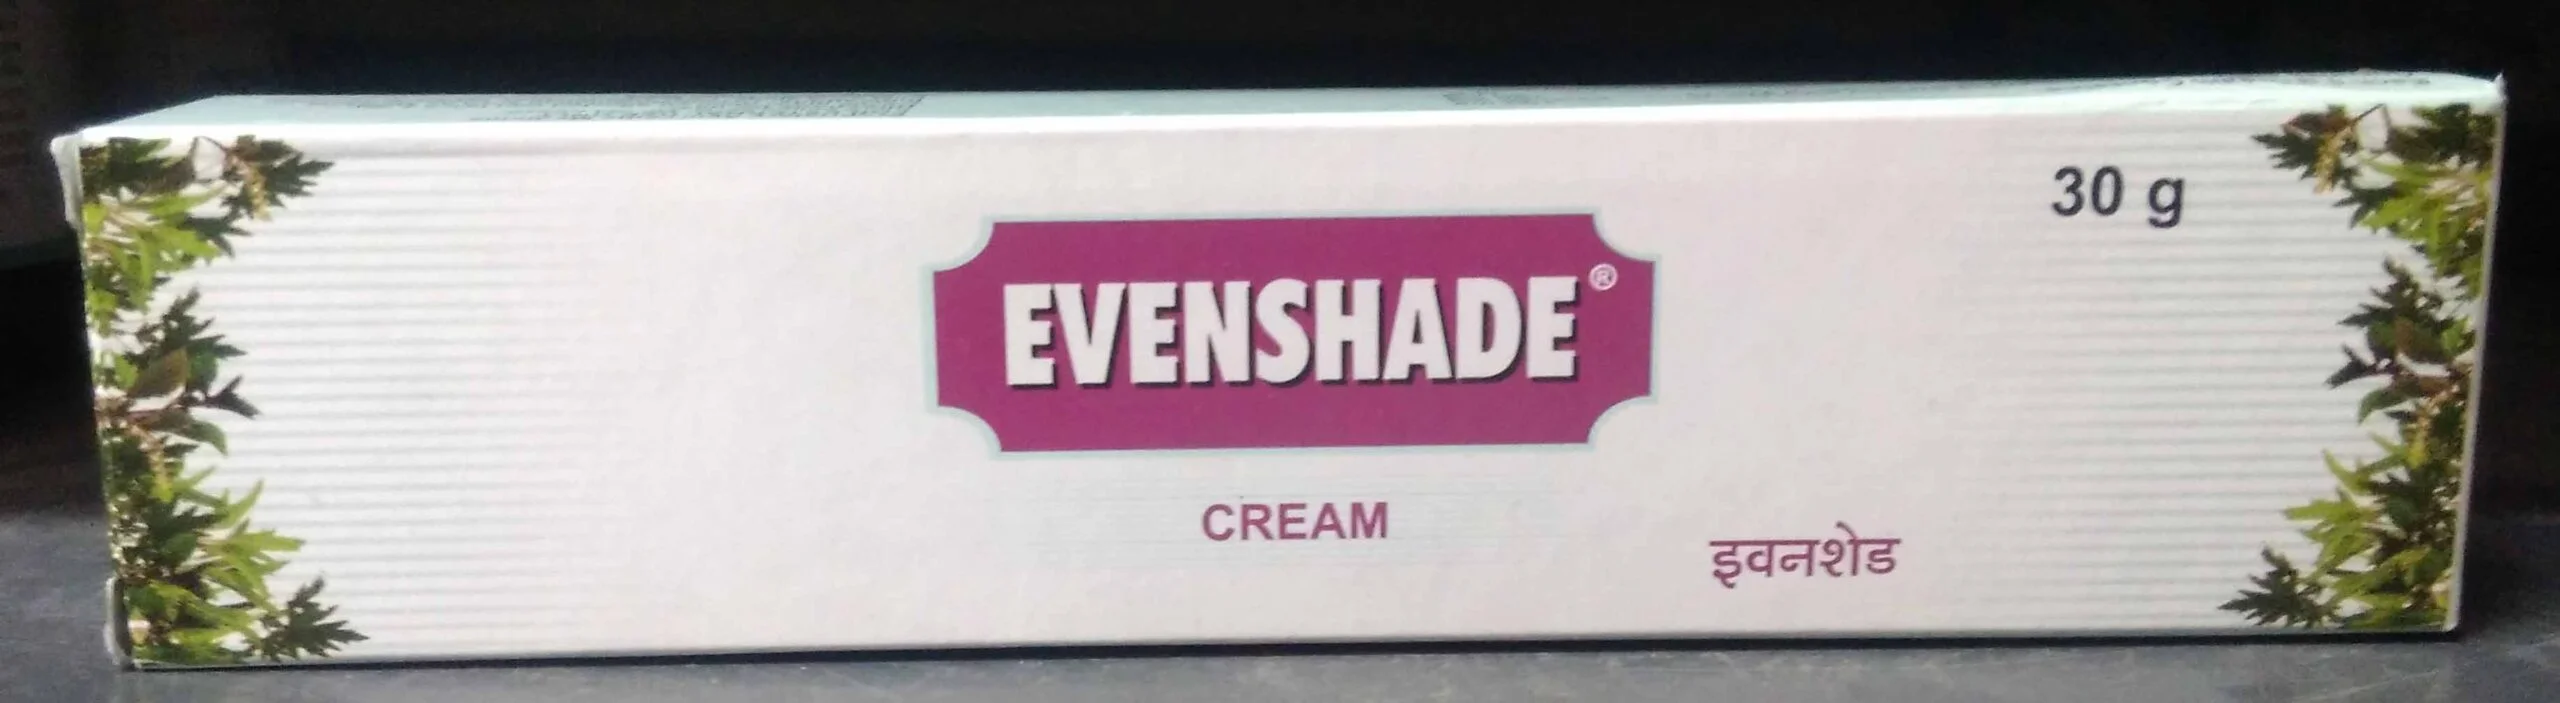 evenshade cream 30gm upto 15% off charak phytonova